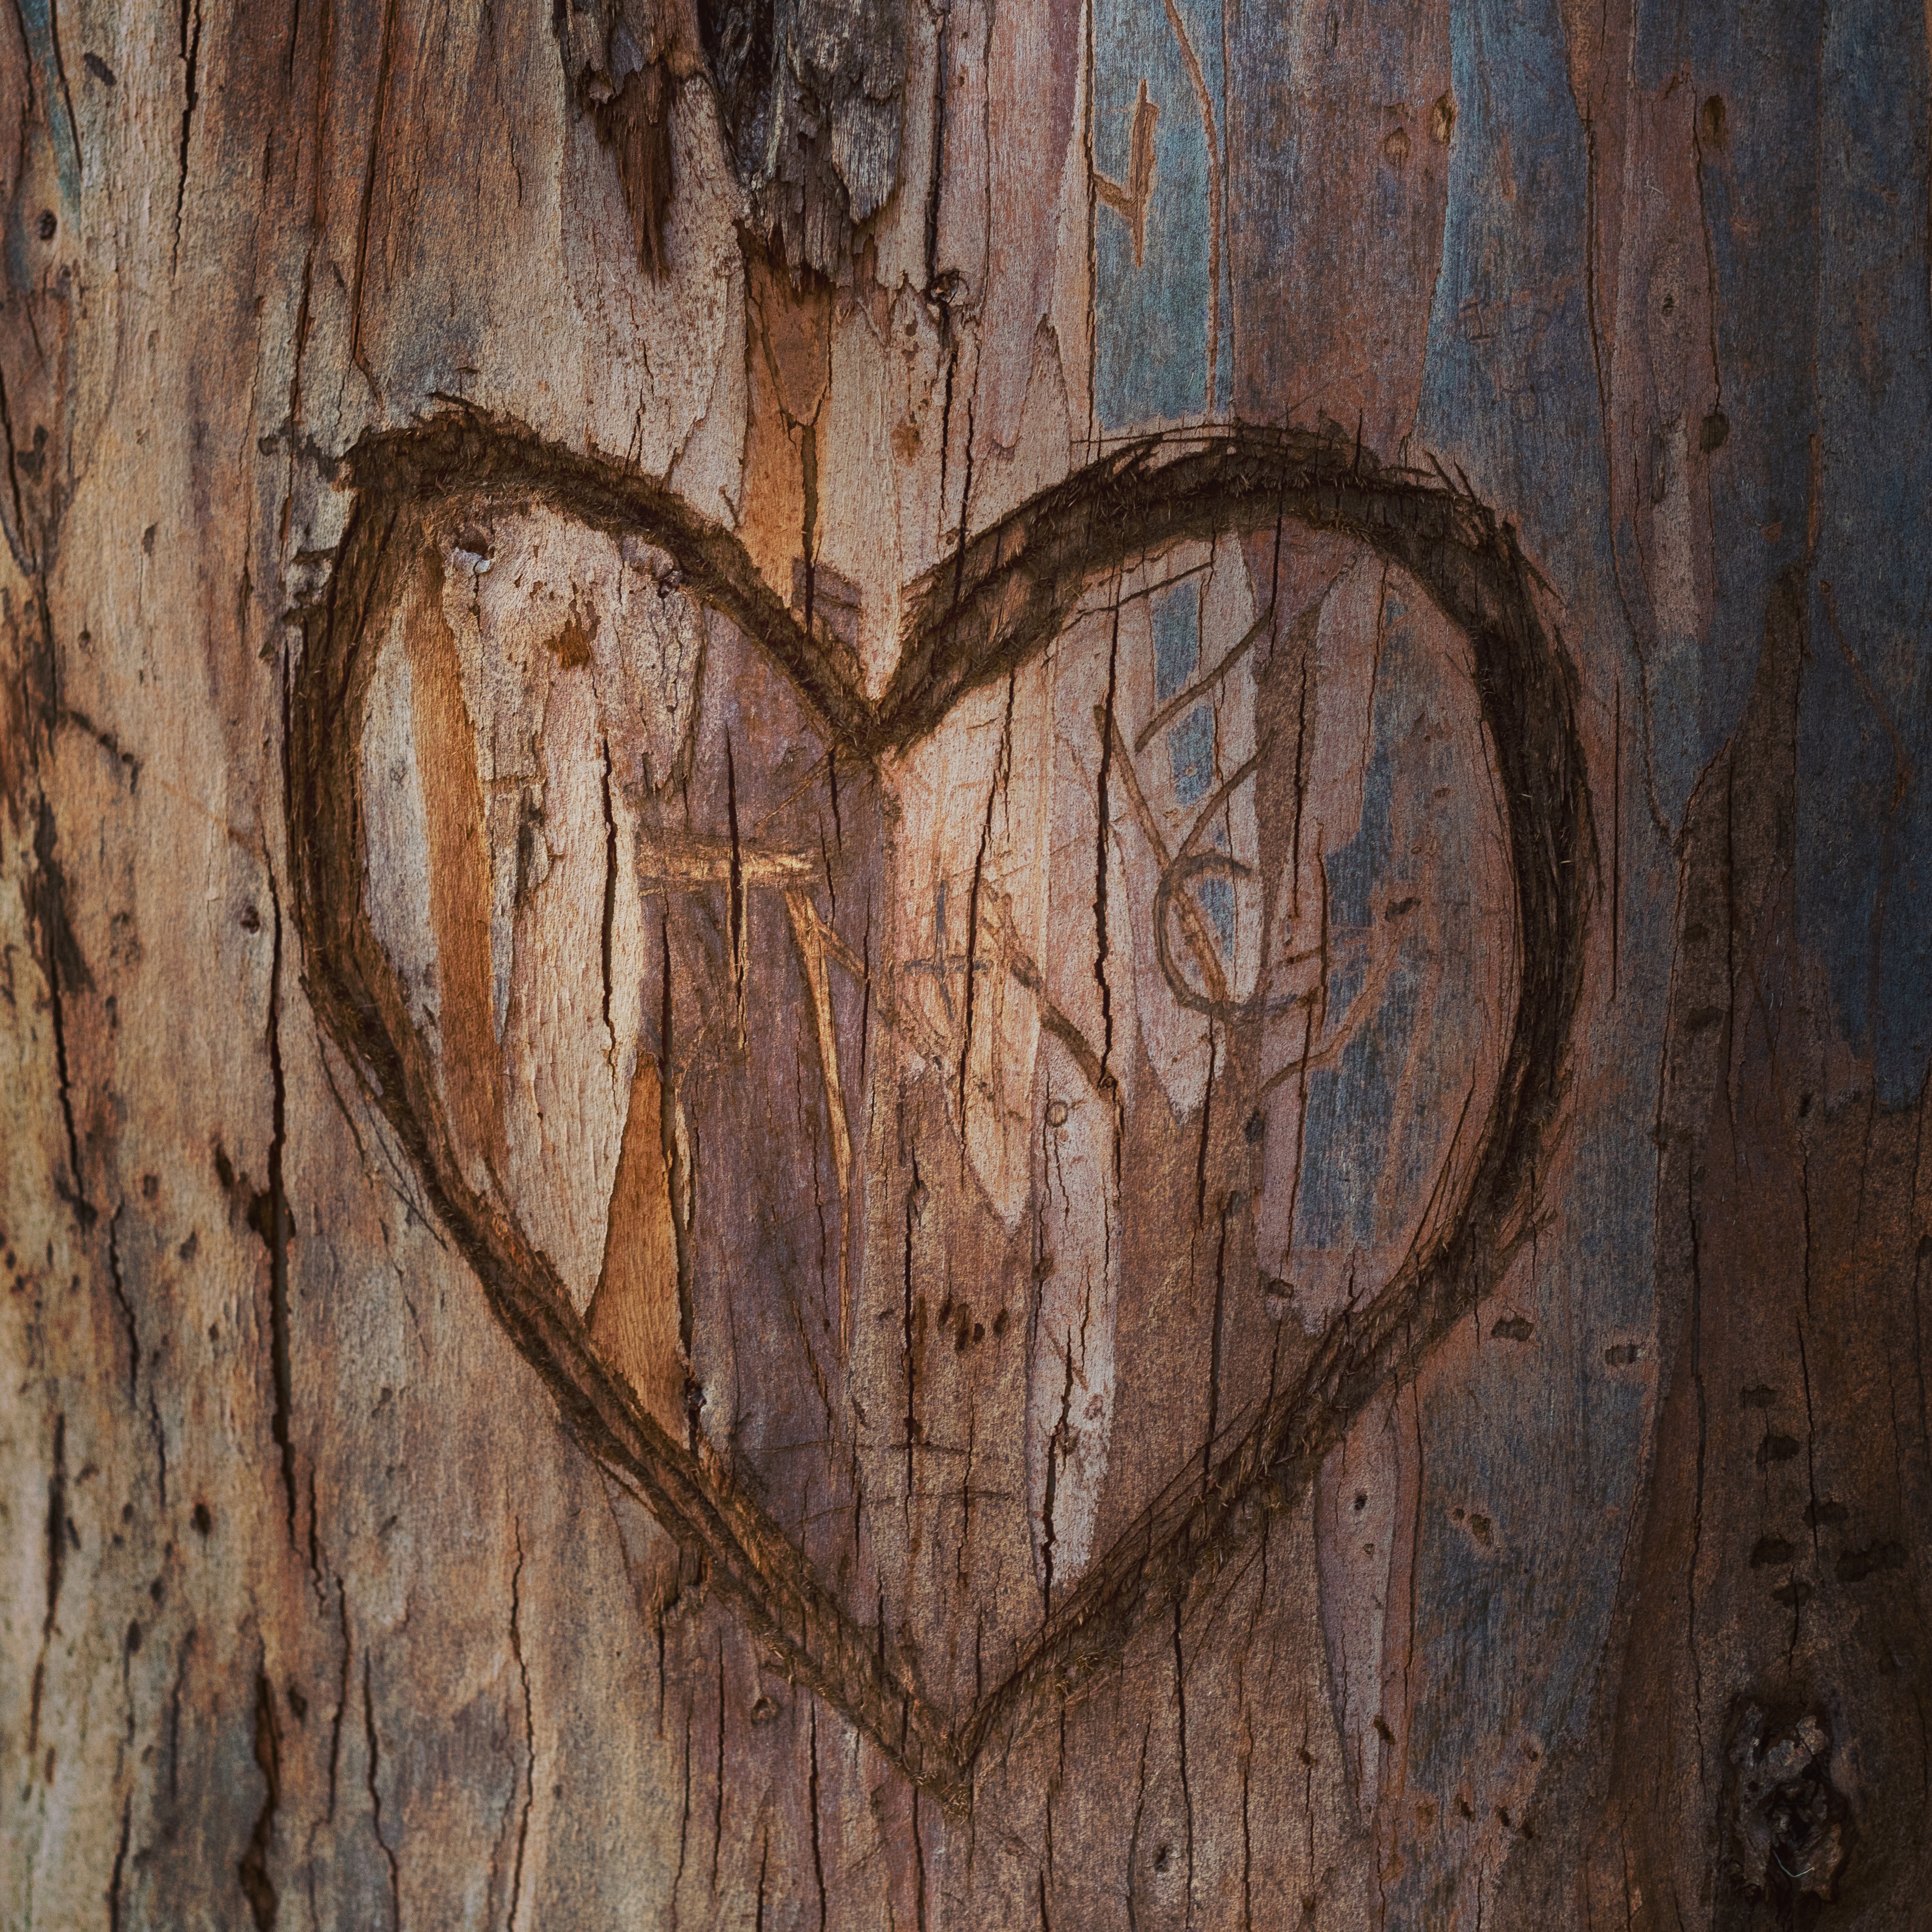 Heart on Wood by PheonixStarr on DeviantArt